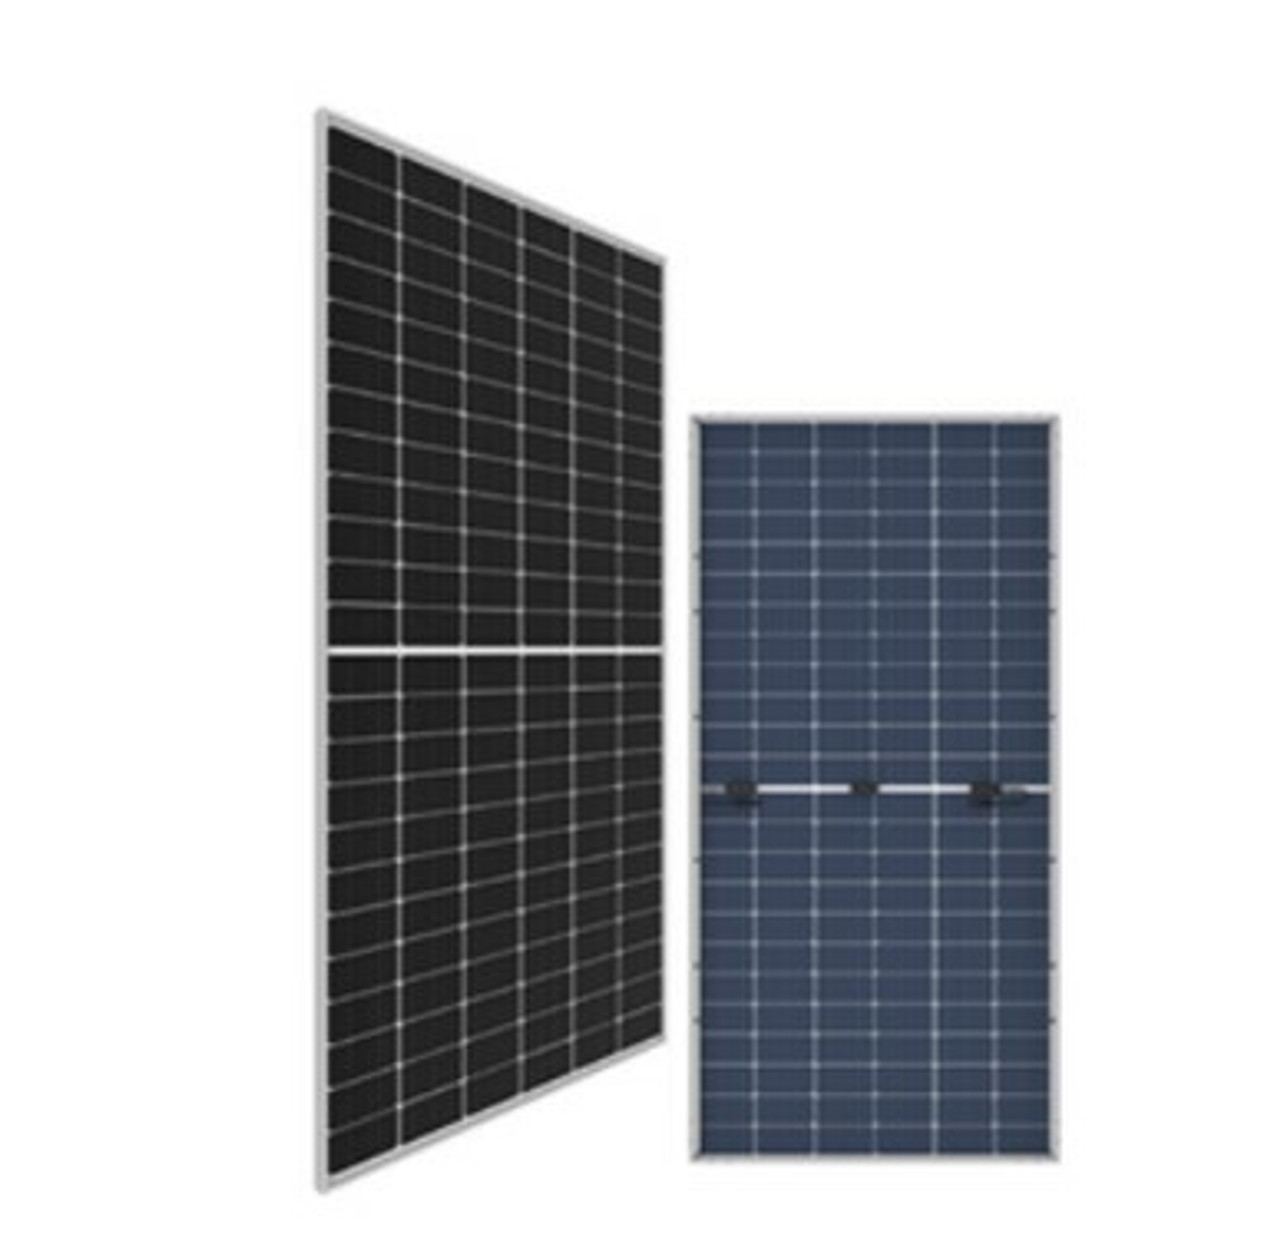 Bifacial Solar Panel